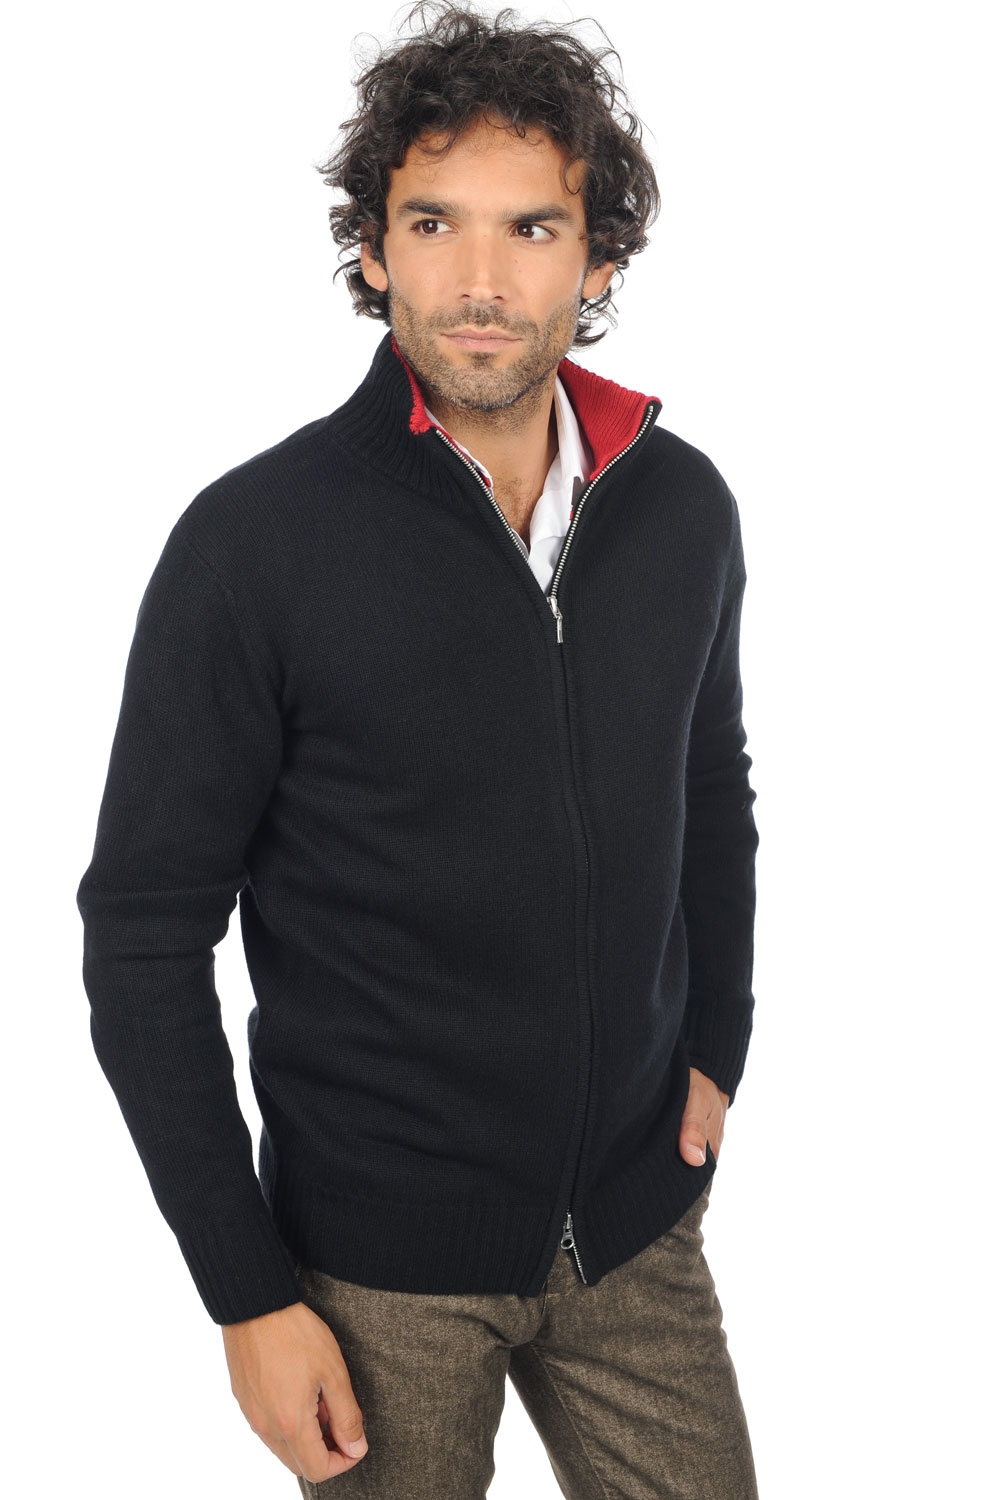 Cachemire pull homme zip capuche maxime noir rouge velours 3xl